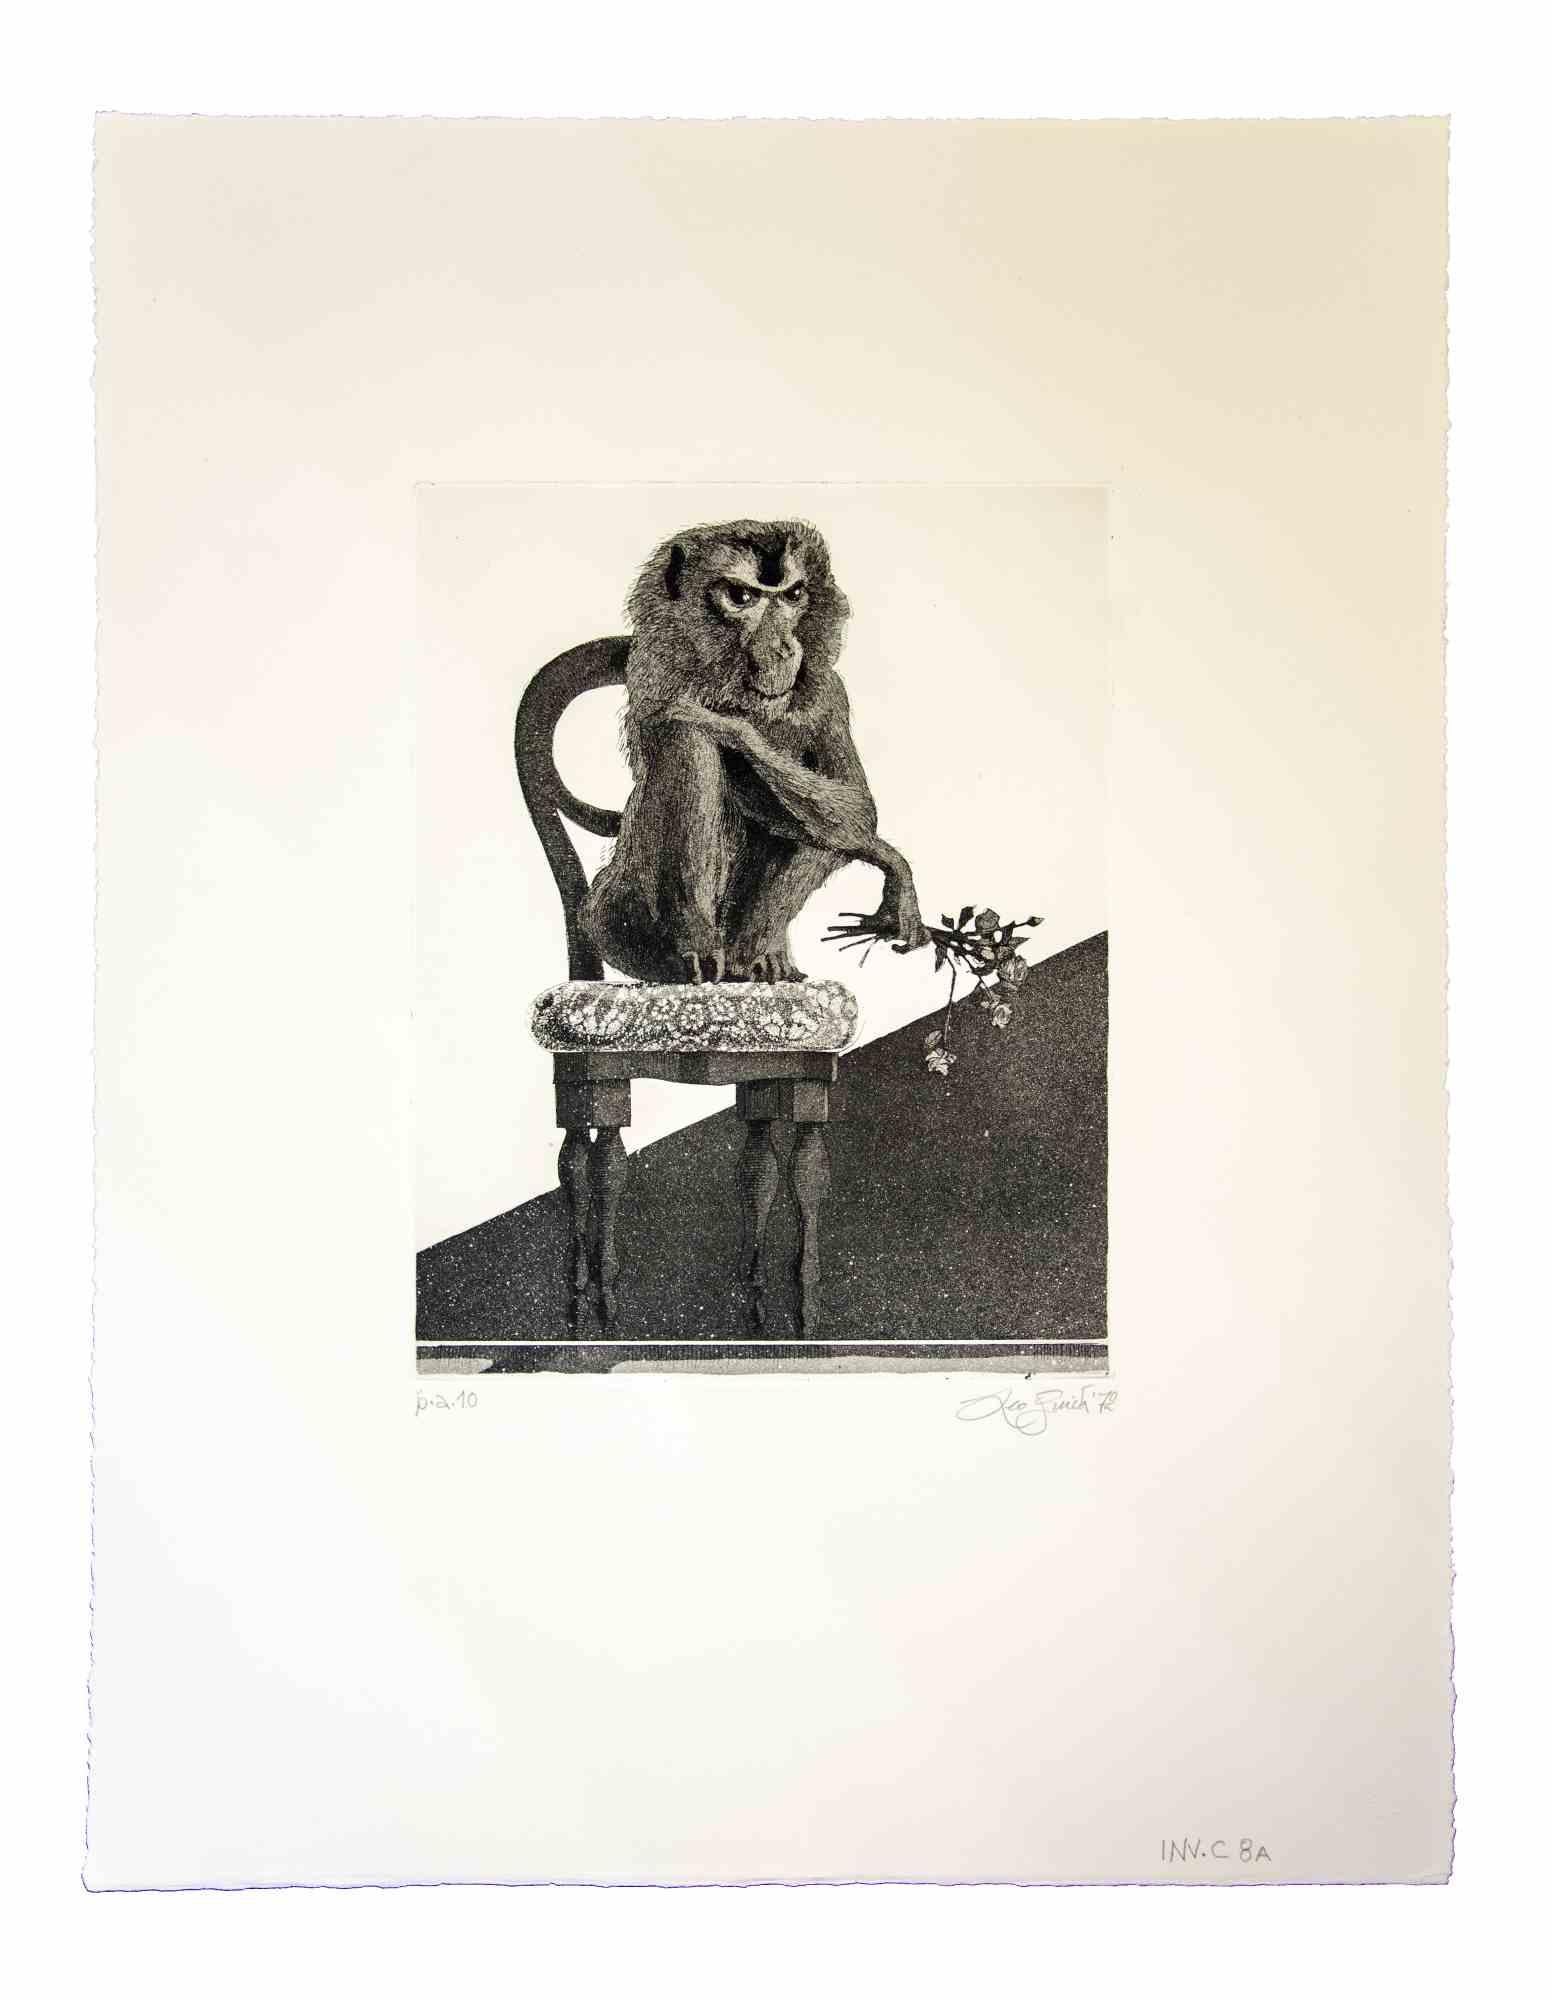 Der Affe ist ein originales zeitgenössisches Kunstwerk aus dem Jahr 1972  des italienischen Künstlers  Leo Guida .

Original-Radierung auf Karton.

Neuwertiger Zustand. 

Künstlerischer Nachweis.

Vom Autor handsigniert und datiert.

Leo Guida. Mit